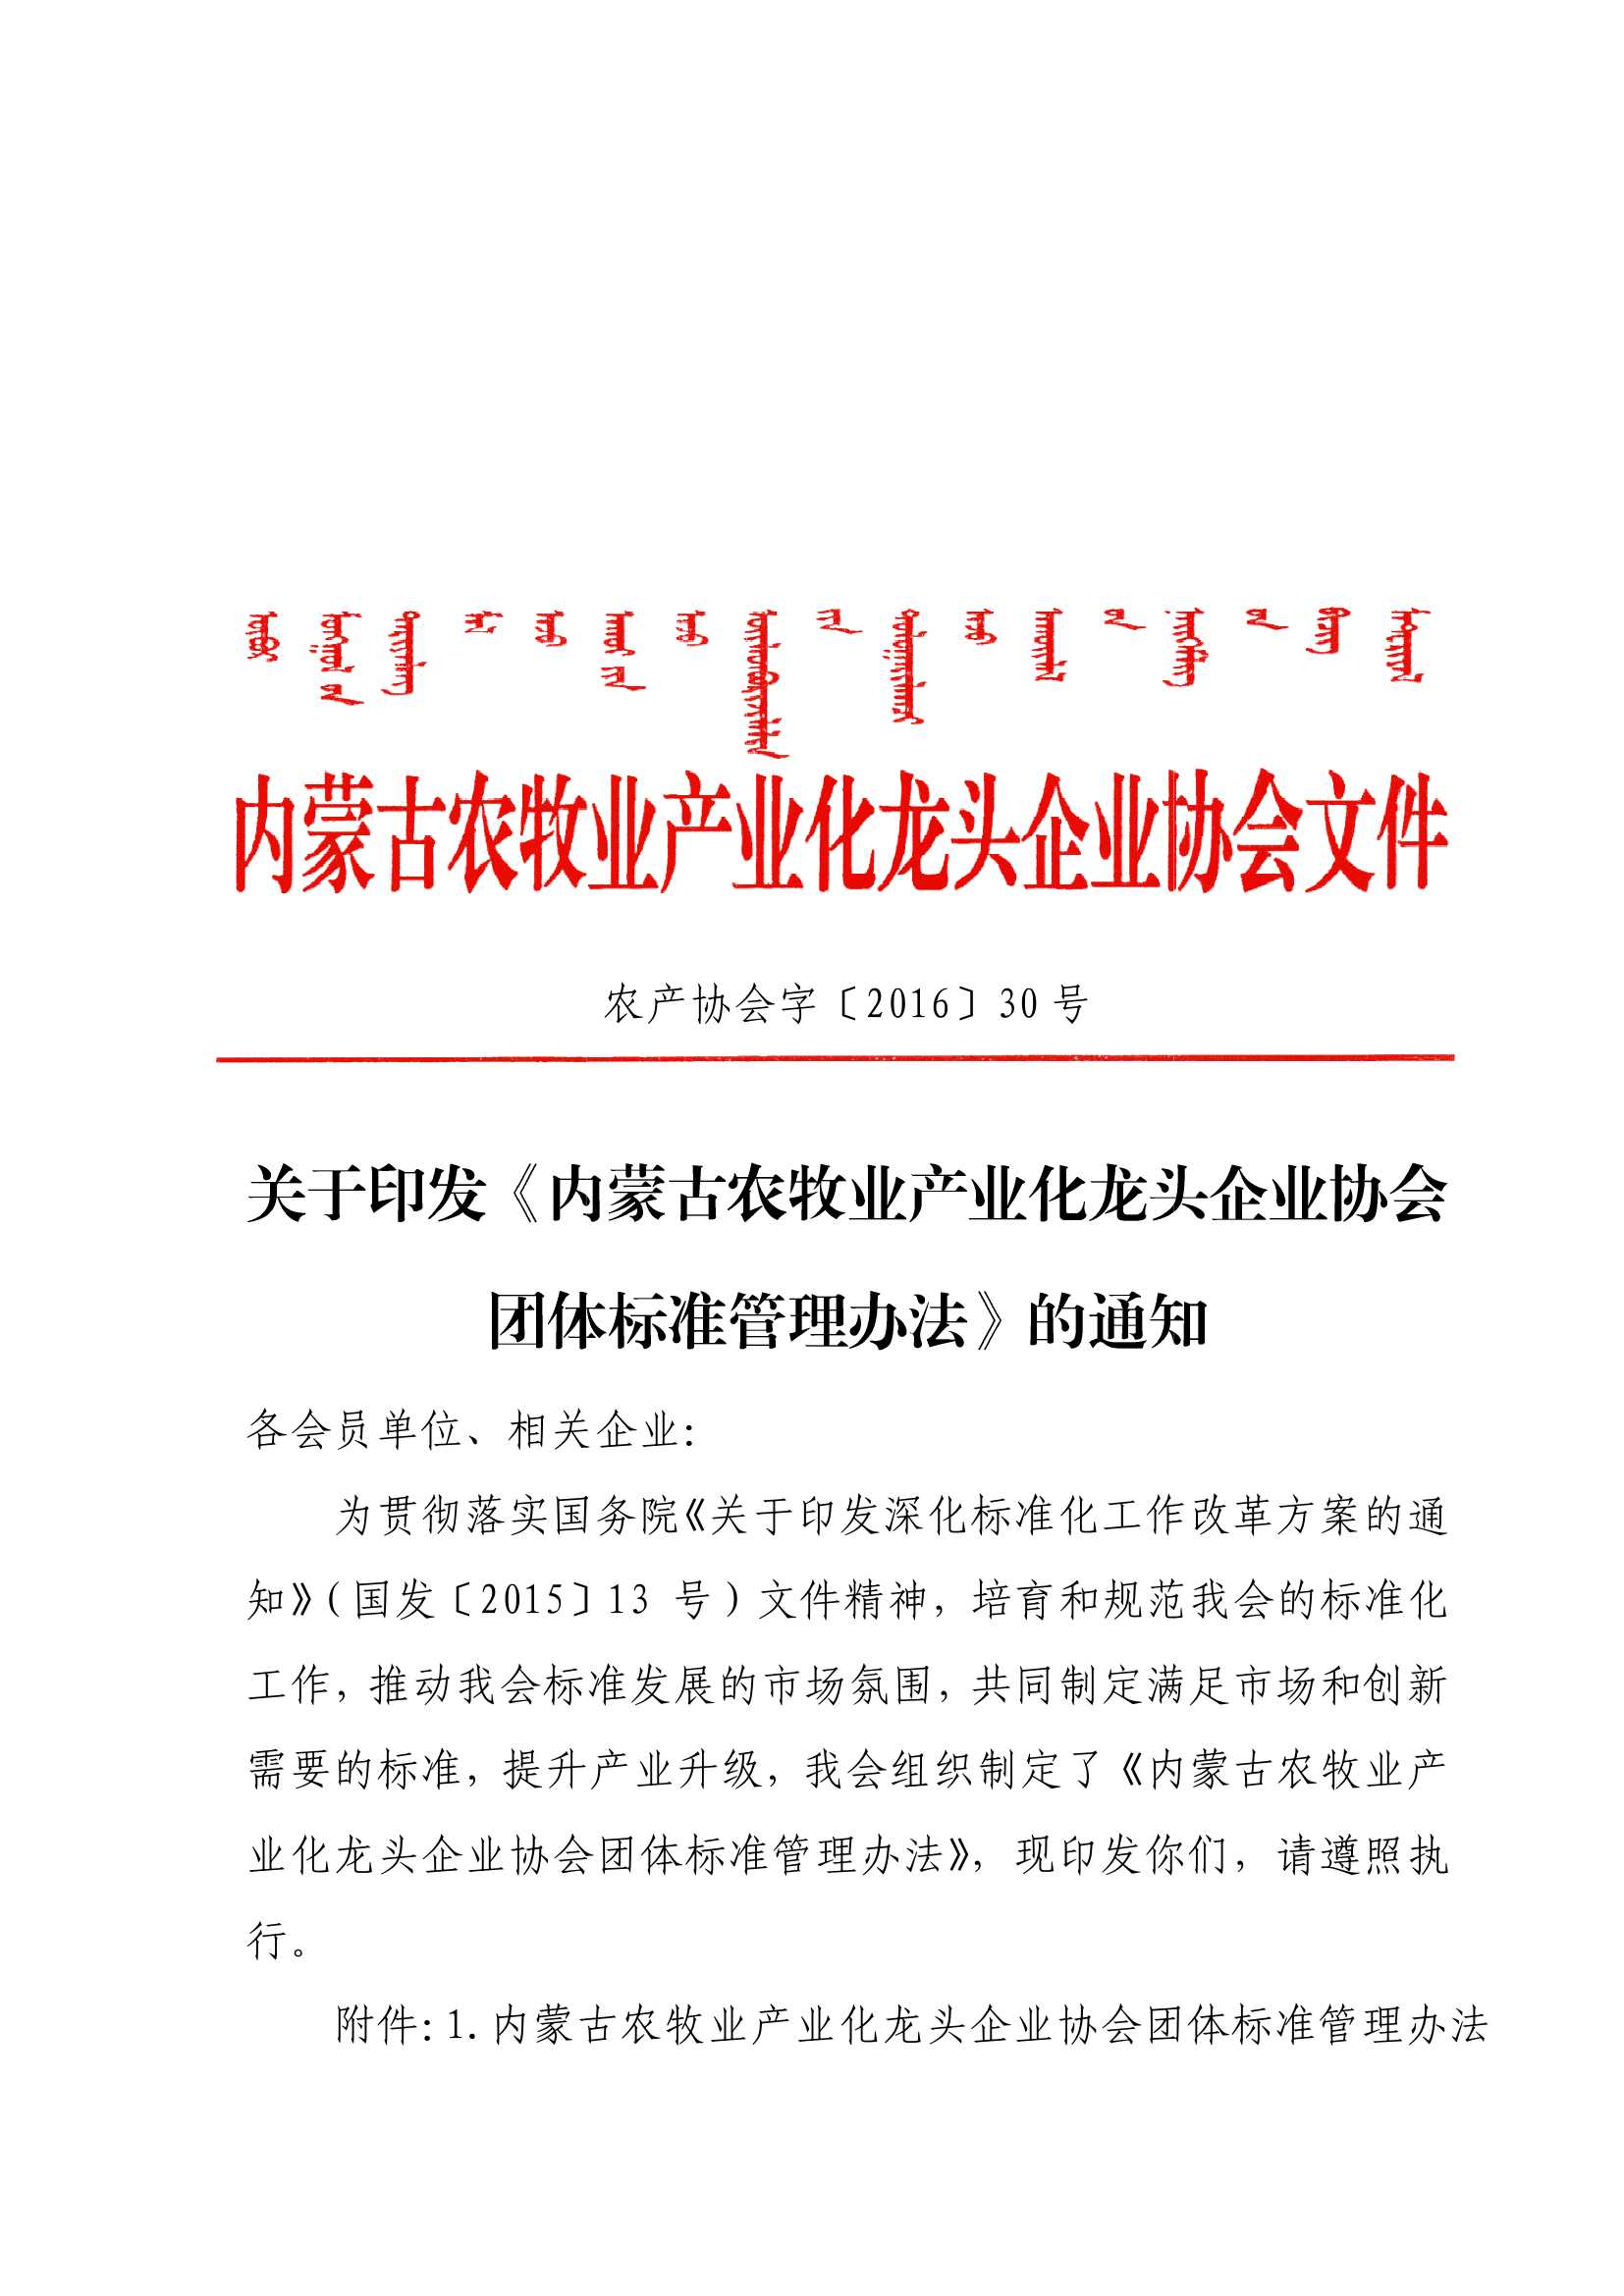 关于印发《米乐M6(中国)官方网站农牧业产业化龙头企业米乐团体标准管理办法》的通知